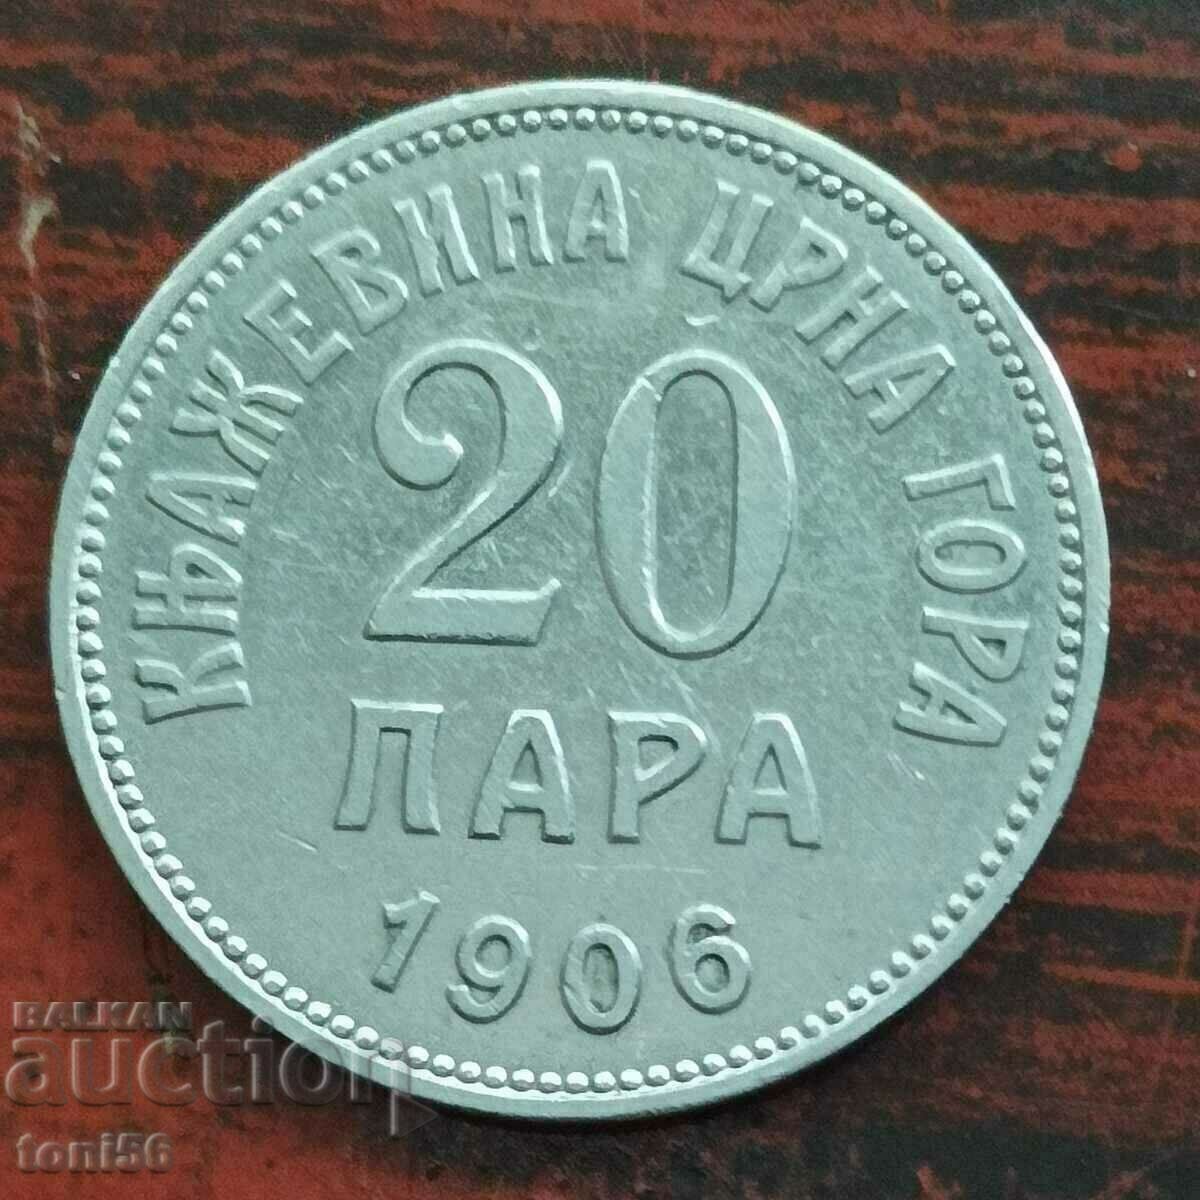 Черна гора 20 пара 1906 аUNC